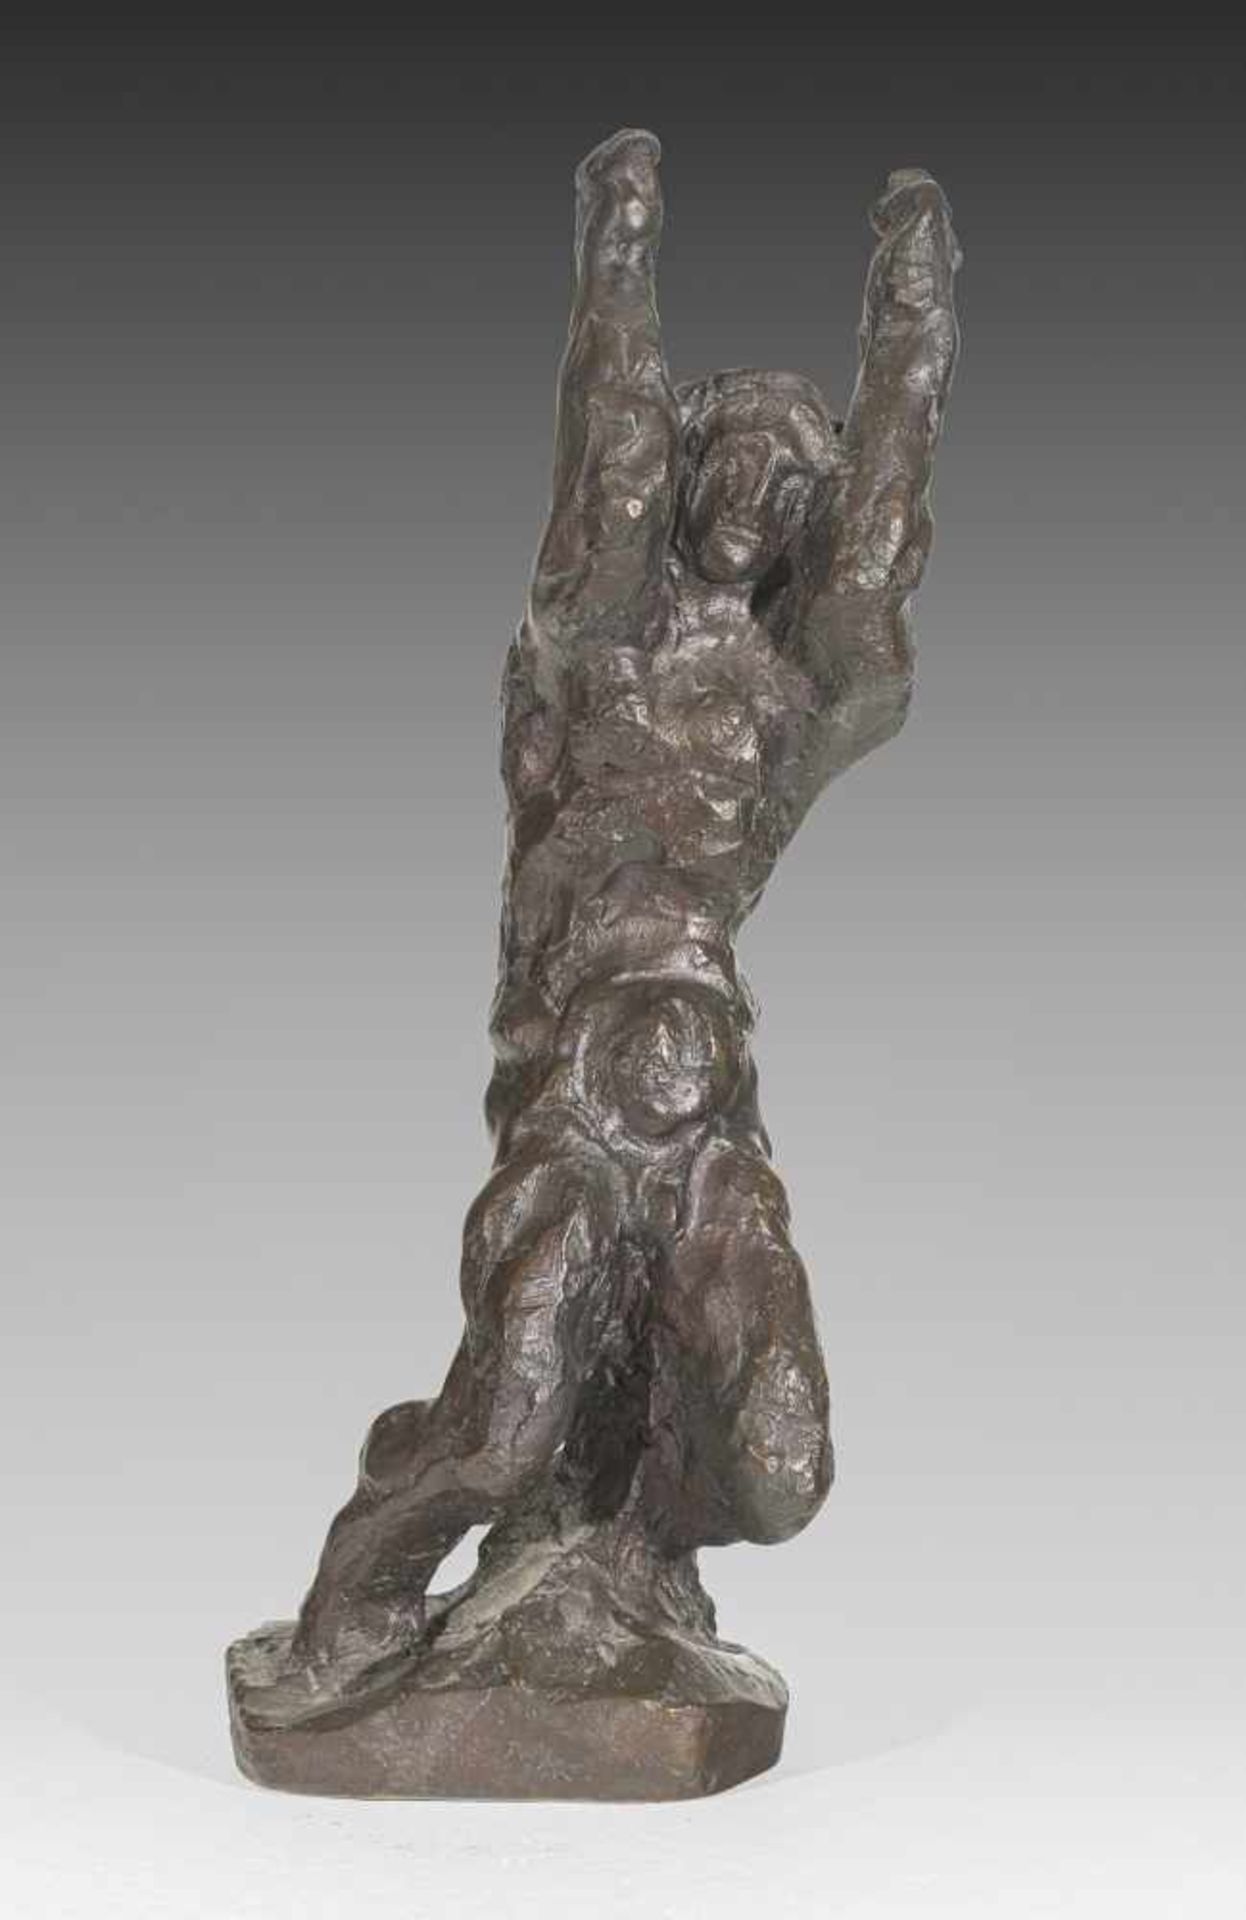 Anton HanakBrünn 1875 - 1934 WienDer brennende MenschBronze patiniert / bronze patinated30 cm